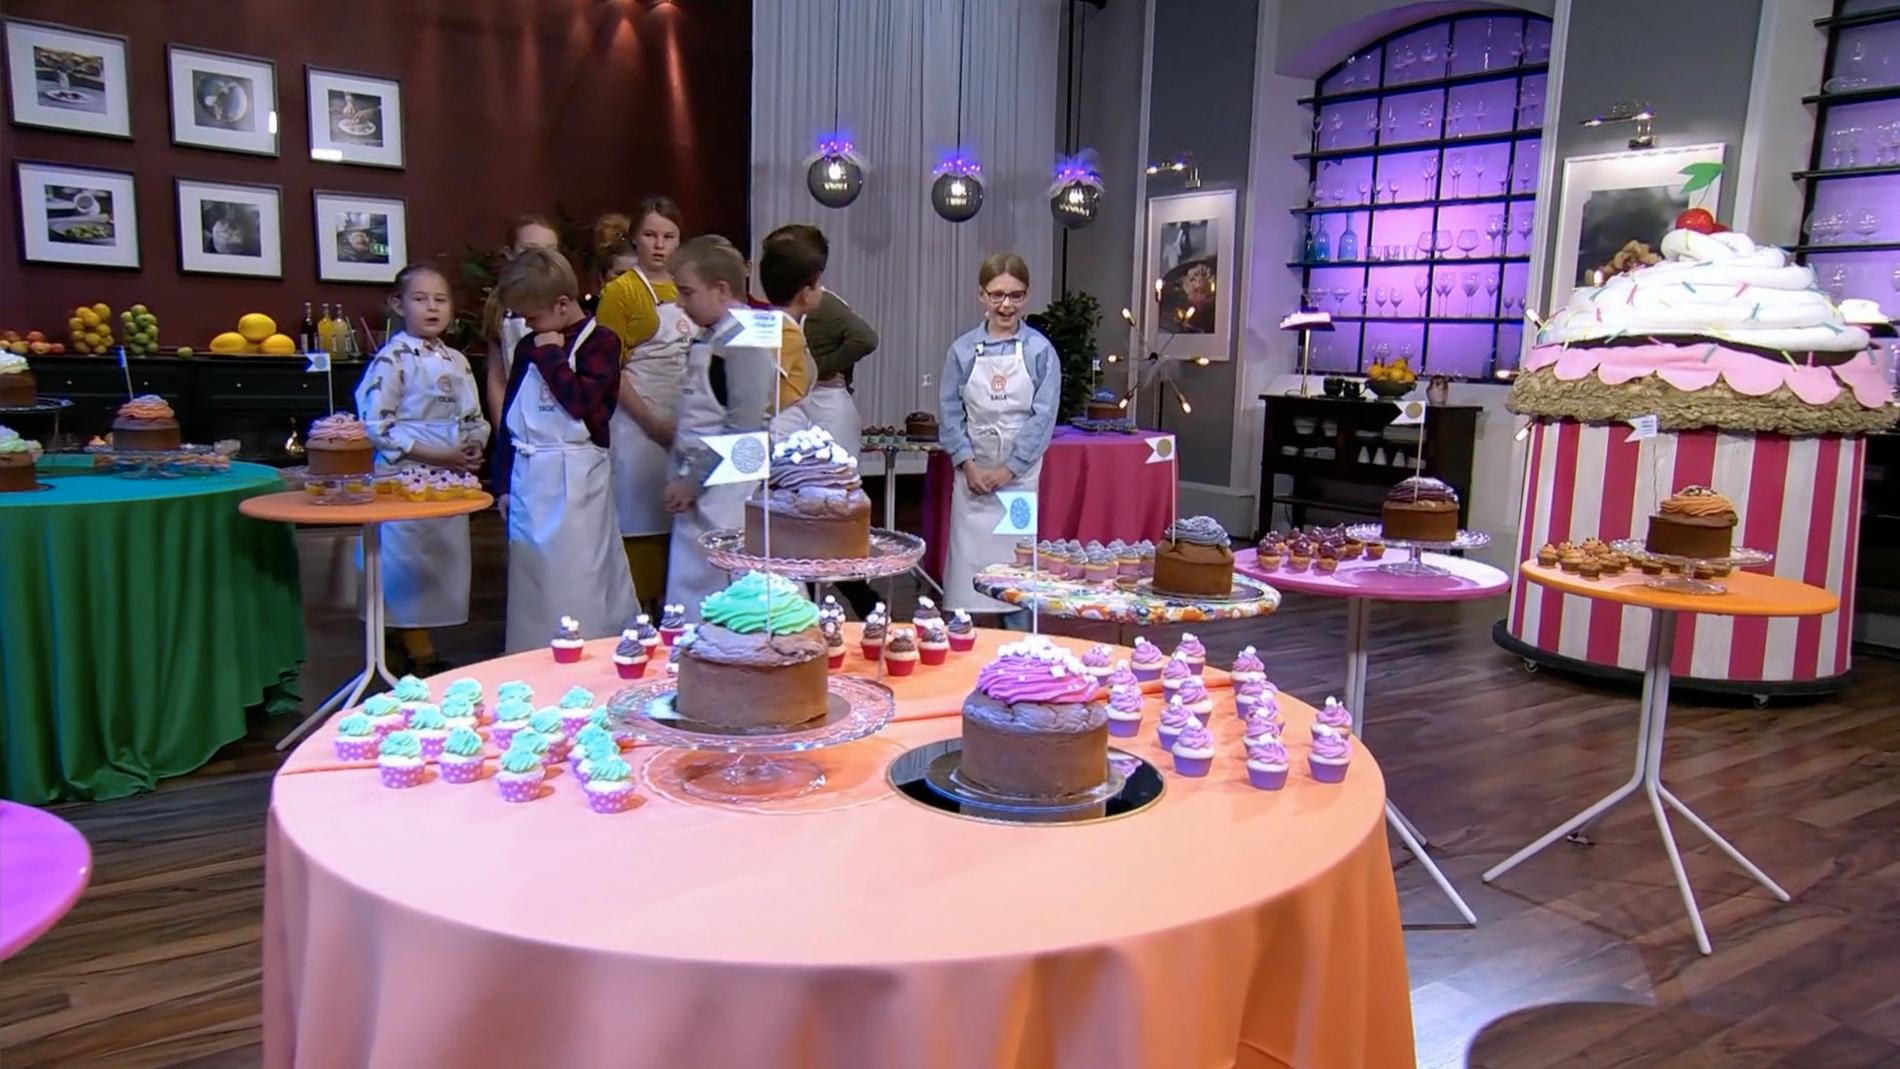 Deltagarna i Sveriges yngsta mästerkock skulle gissa smakerna på cupcakes.